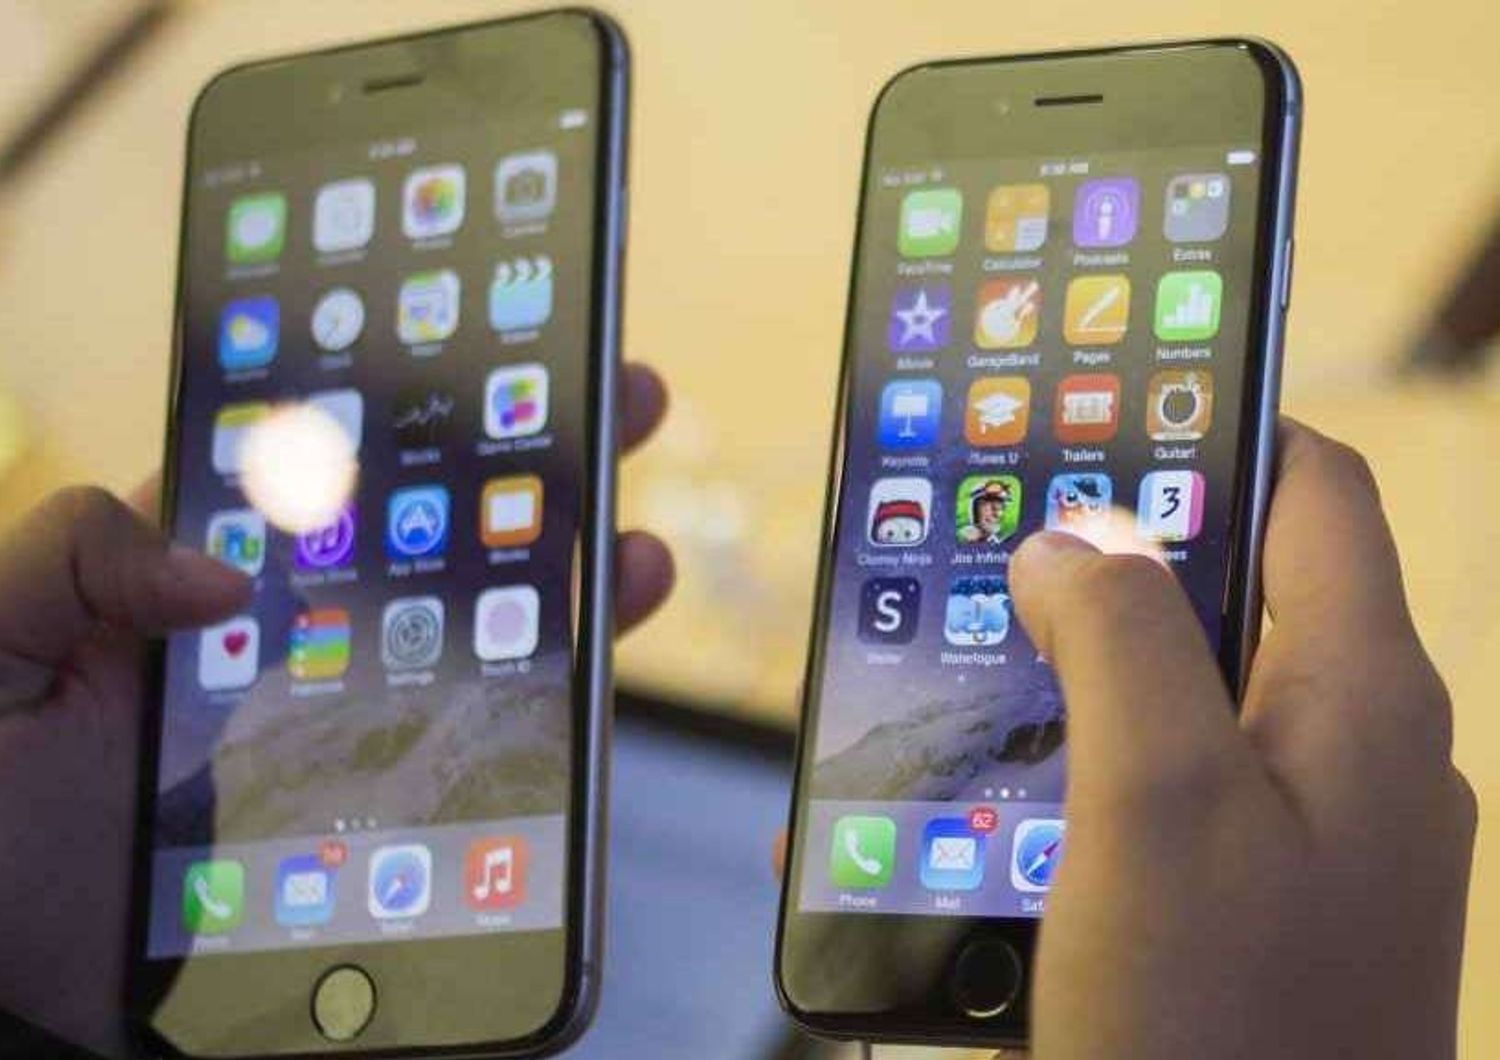 Addio al 'mito' Apple: ritirato iOs 8.0.1 e iPhone 6 Plus troppo 'moscio' - Video